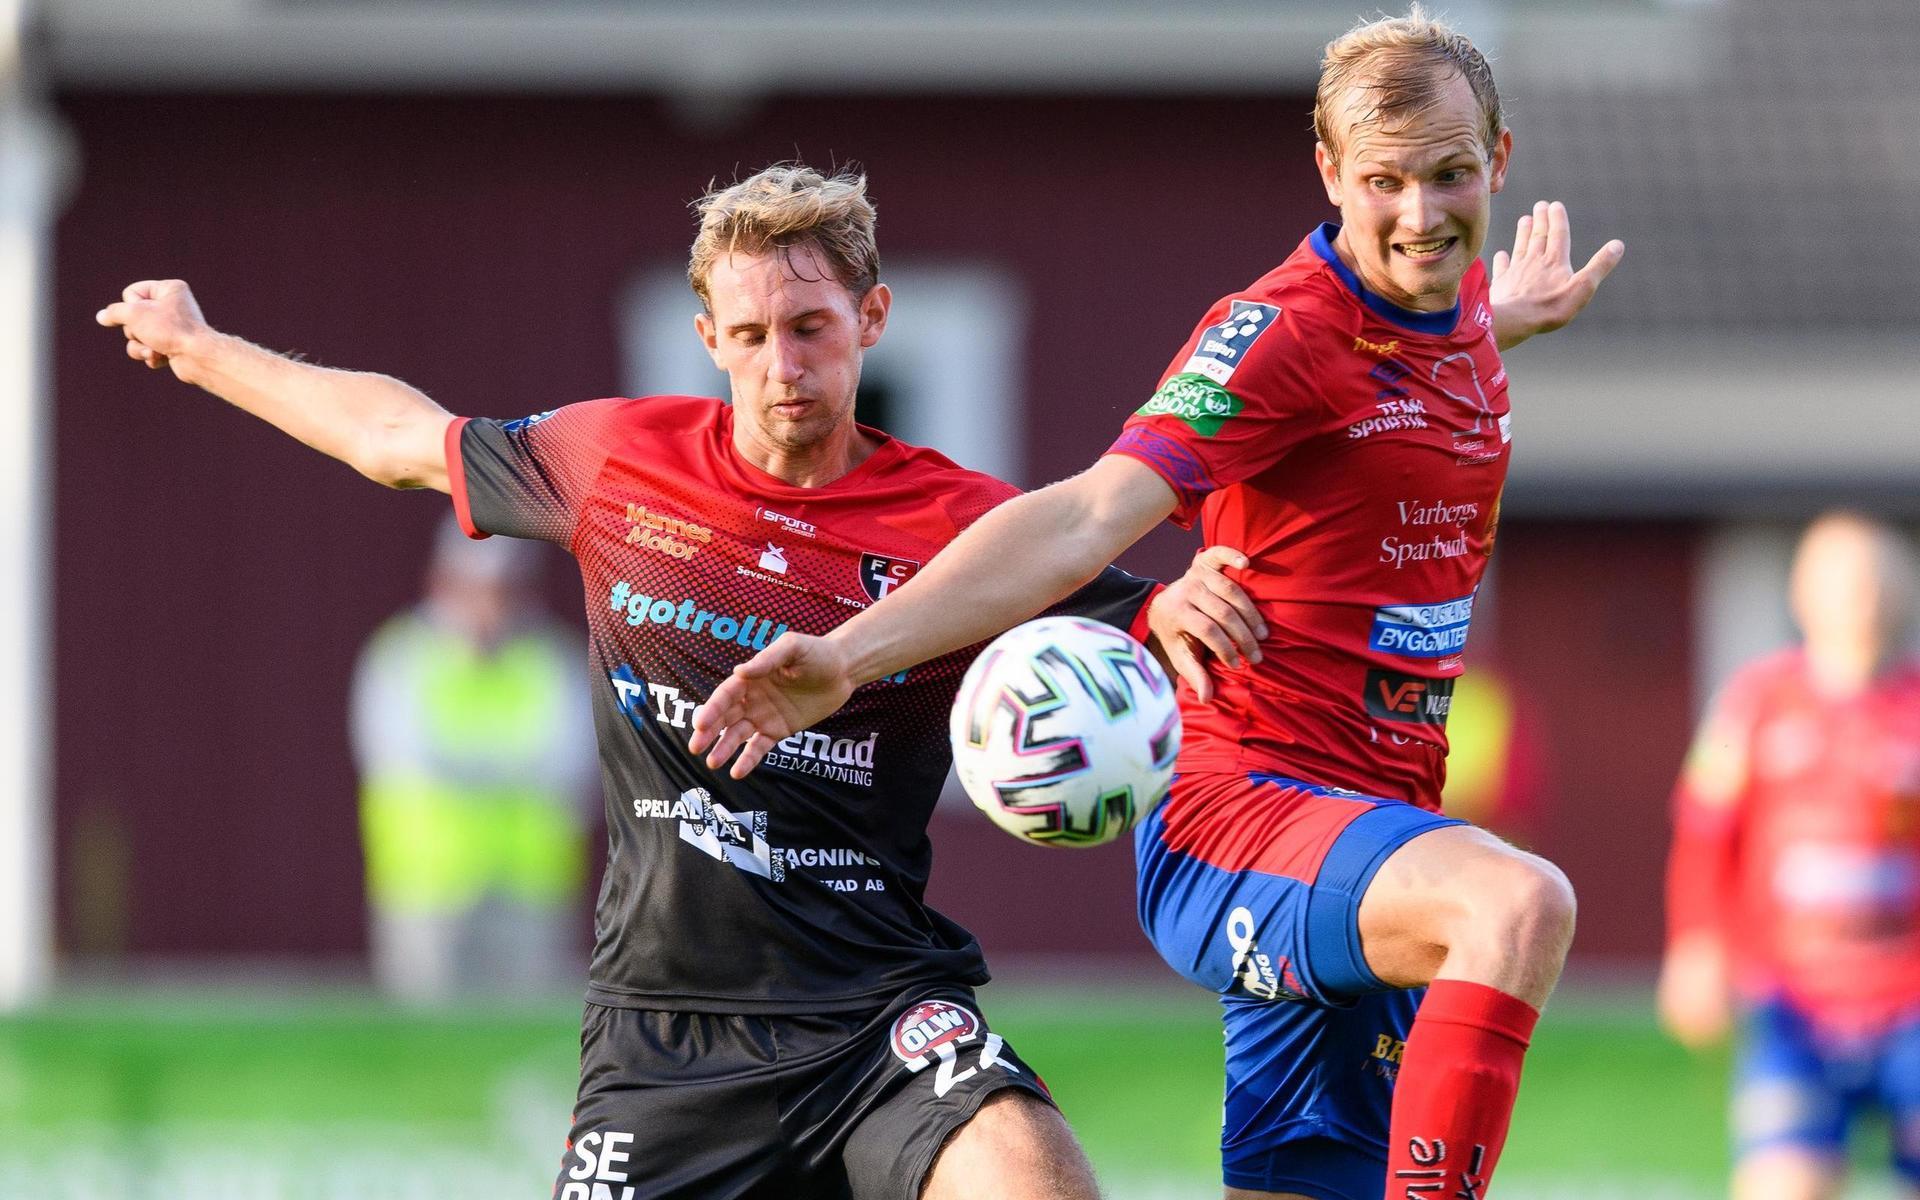 Trollhättans Marcus Johansson och Tvååkers Johan Persson under fotbollsmatchen i Division 1 södra mellan Tvååker och Trollhättan